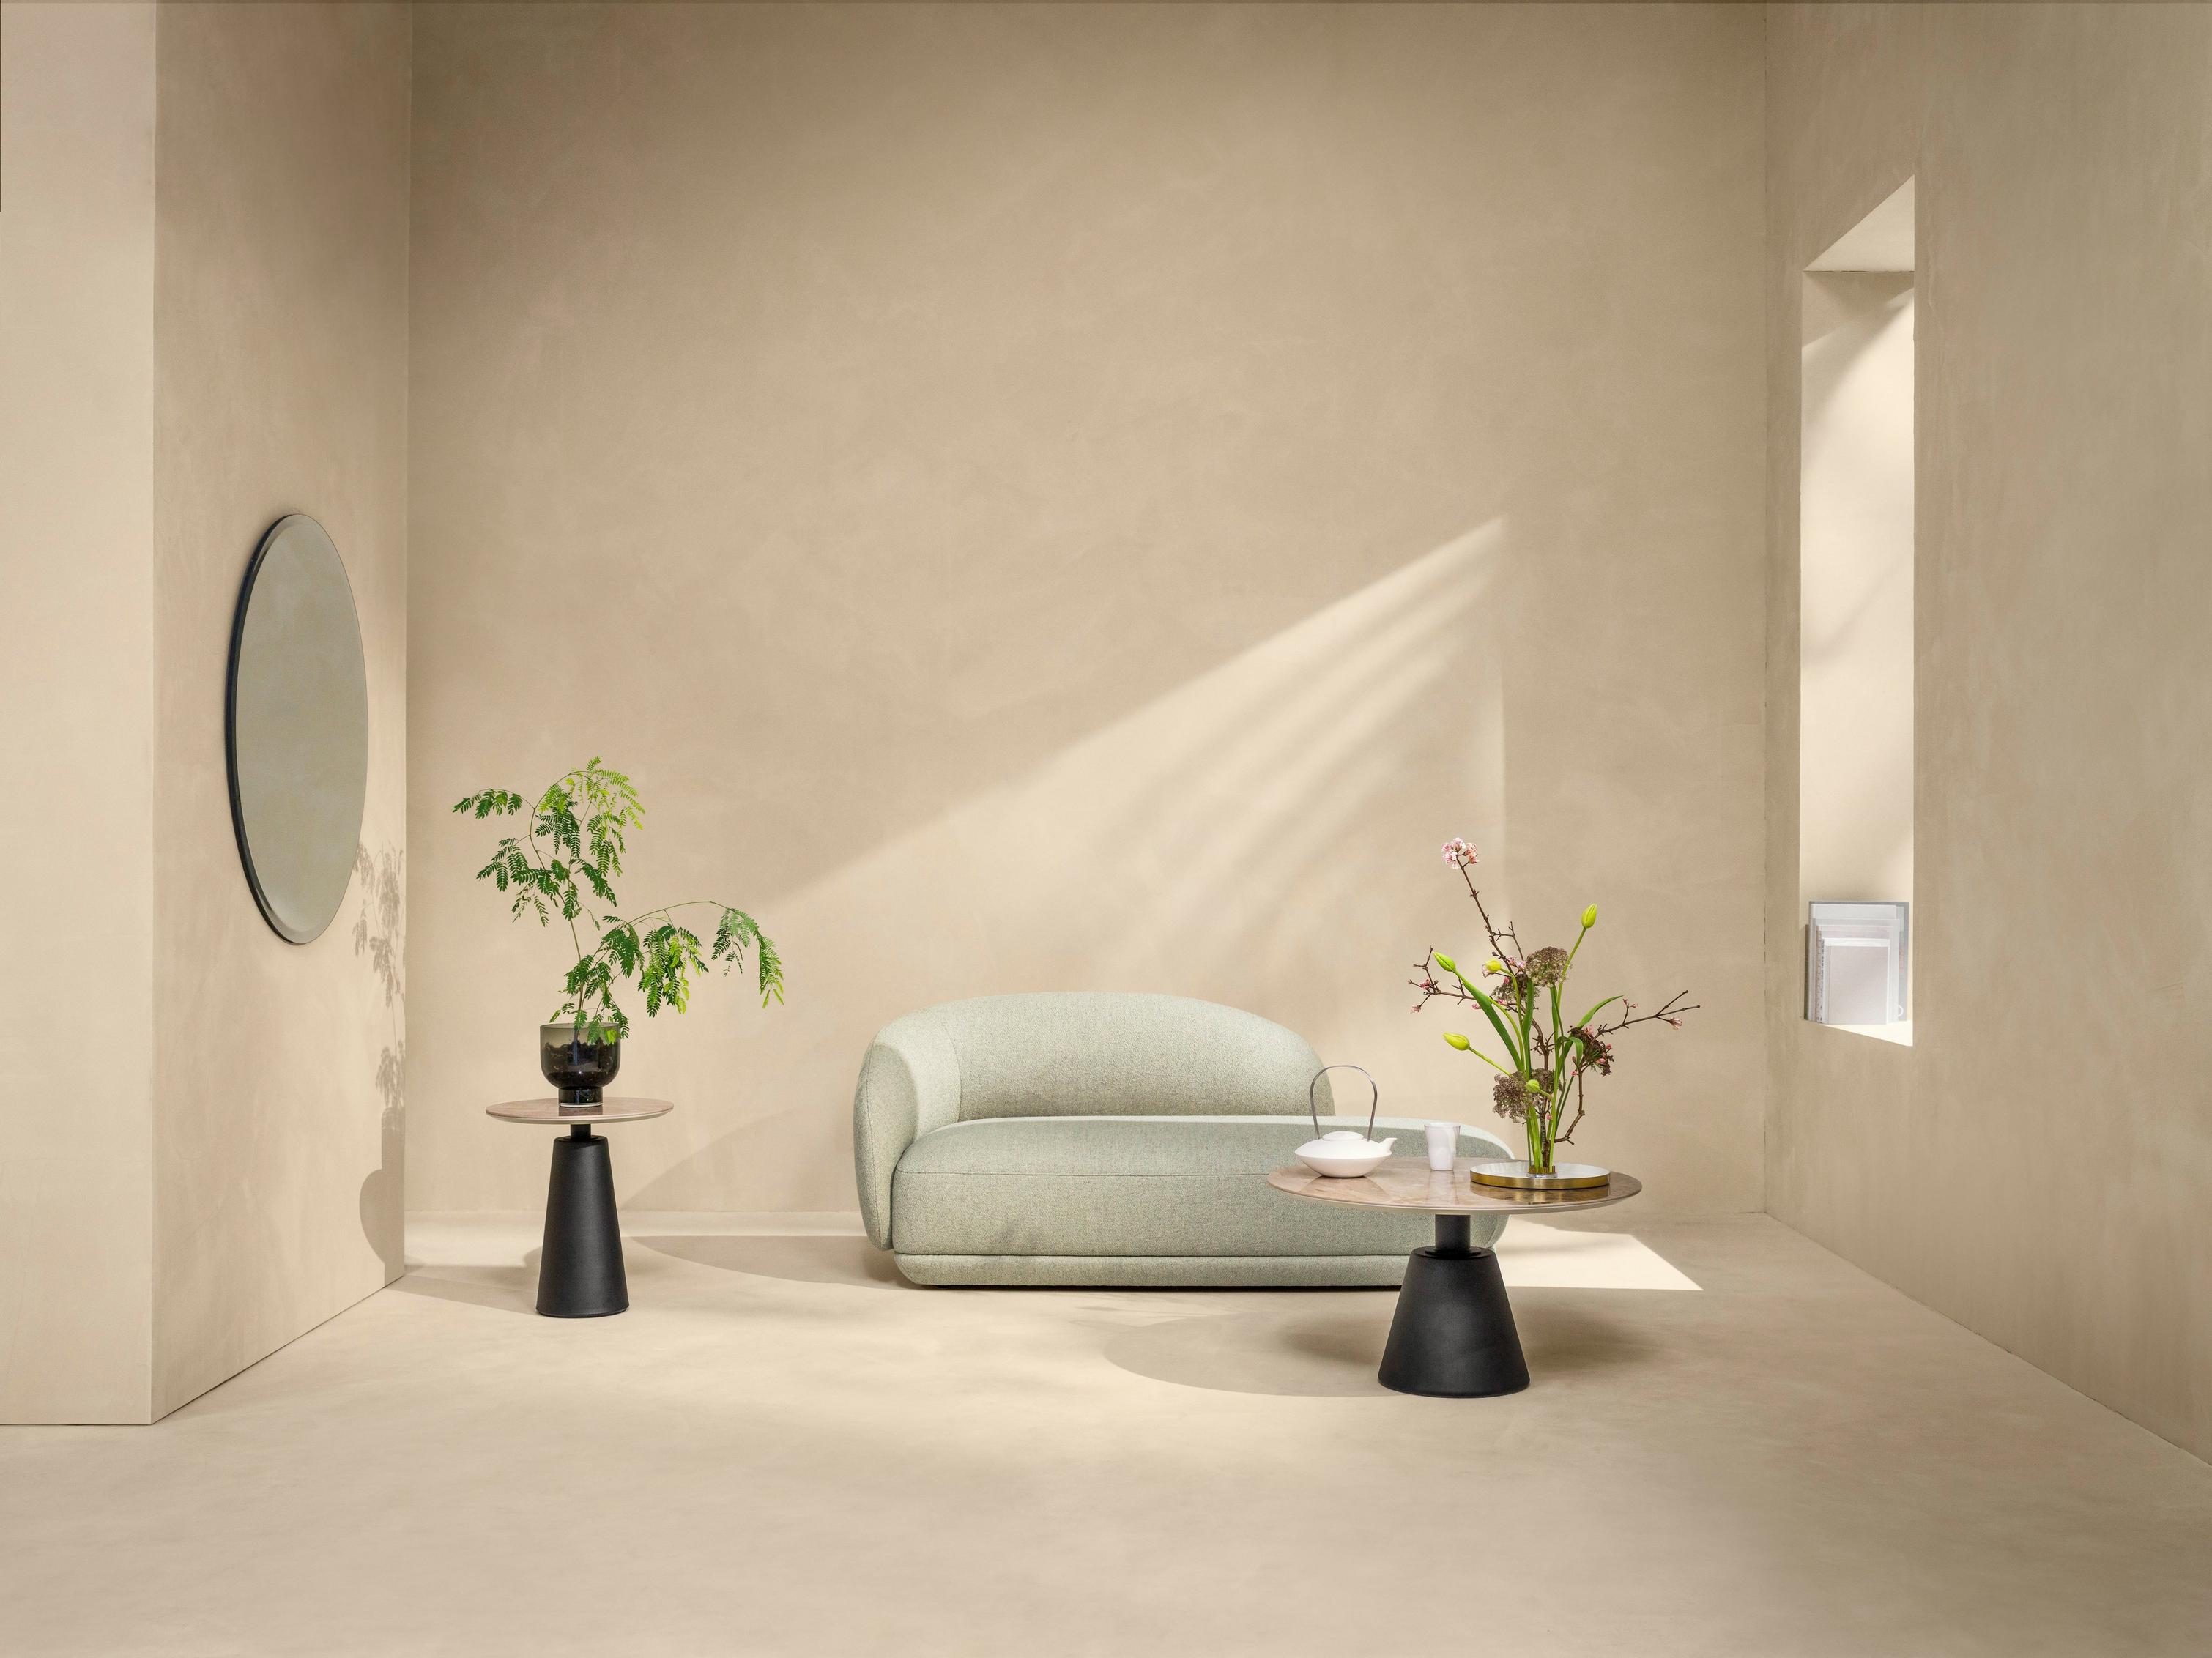 浅绿色 Lazio 面料 Bolzano 躺椅打造优雅起居室。